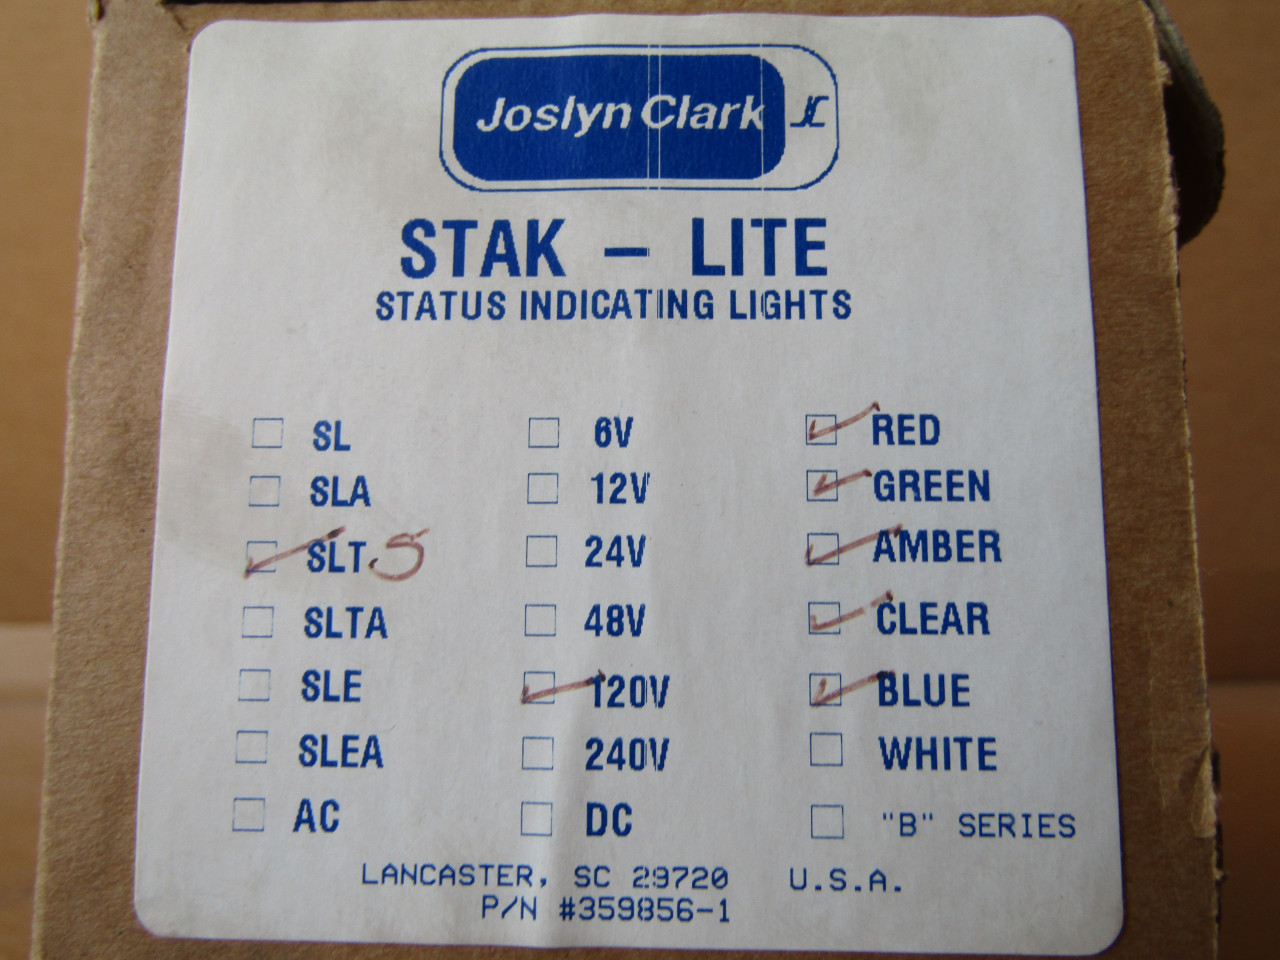 Joslyn Clark STAK-LITE SLT-5 Status Indicating Lights, 120V - New